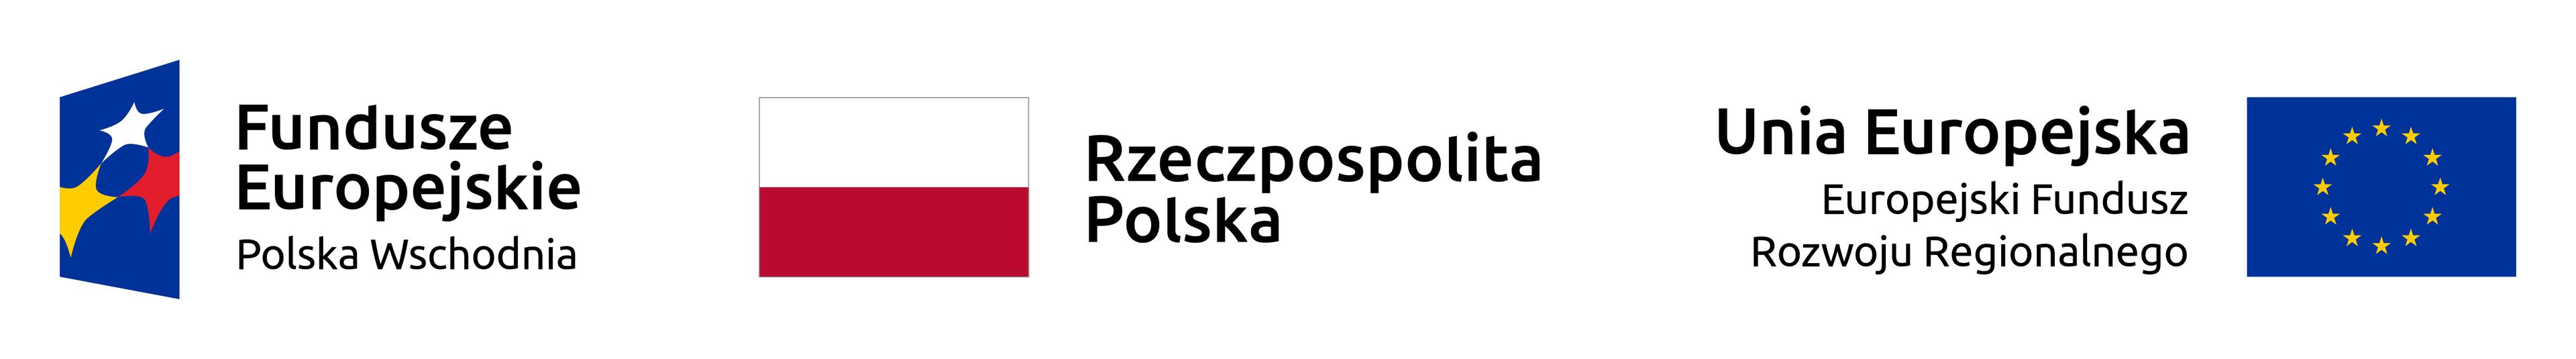 Fundusze Europejskie - Polska Wschodnia, Rzeczpospolita Polska, Unia Europejska - Europejski Fundusz Rozwoju Regionalneg